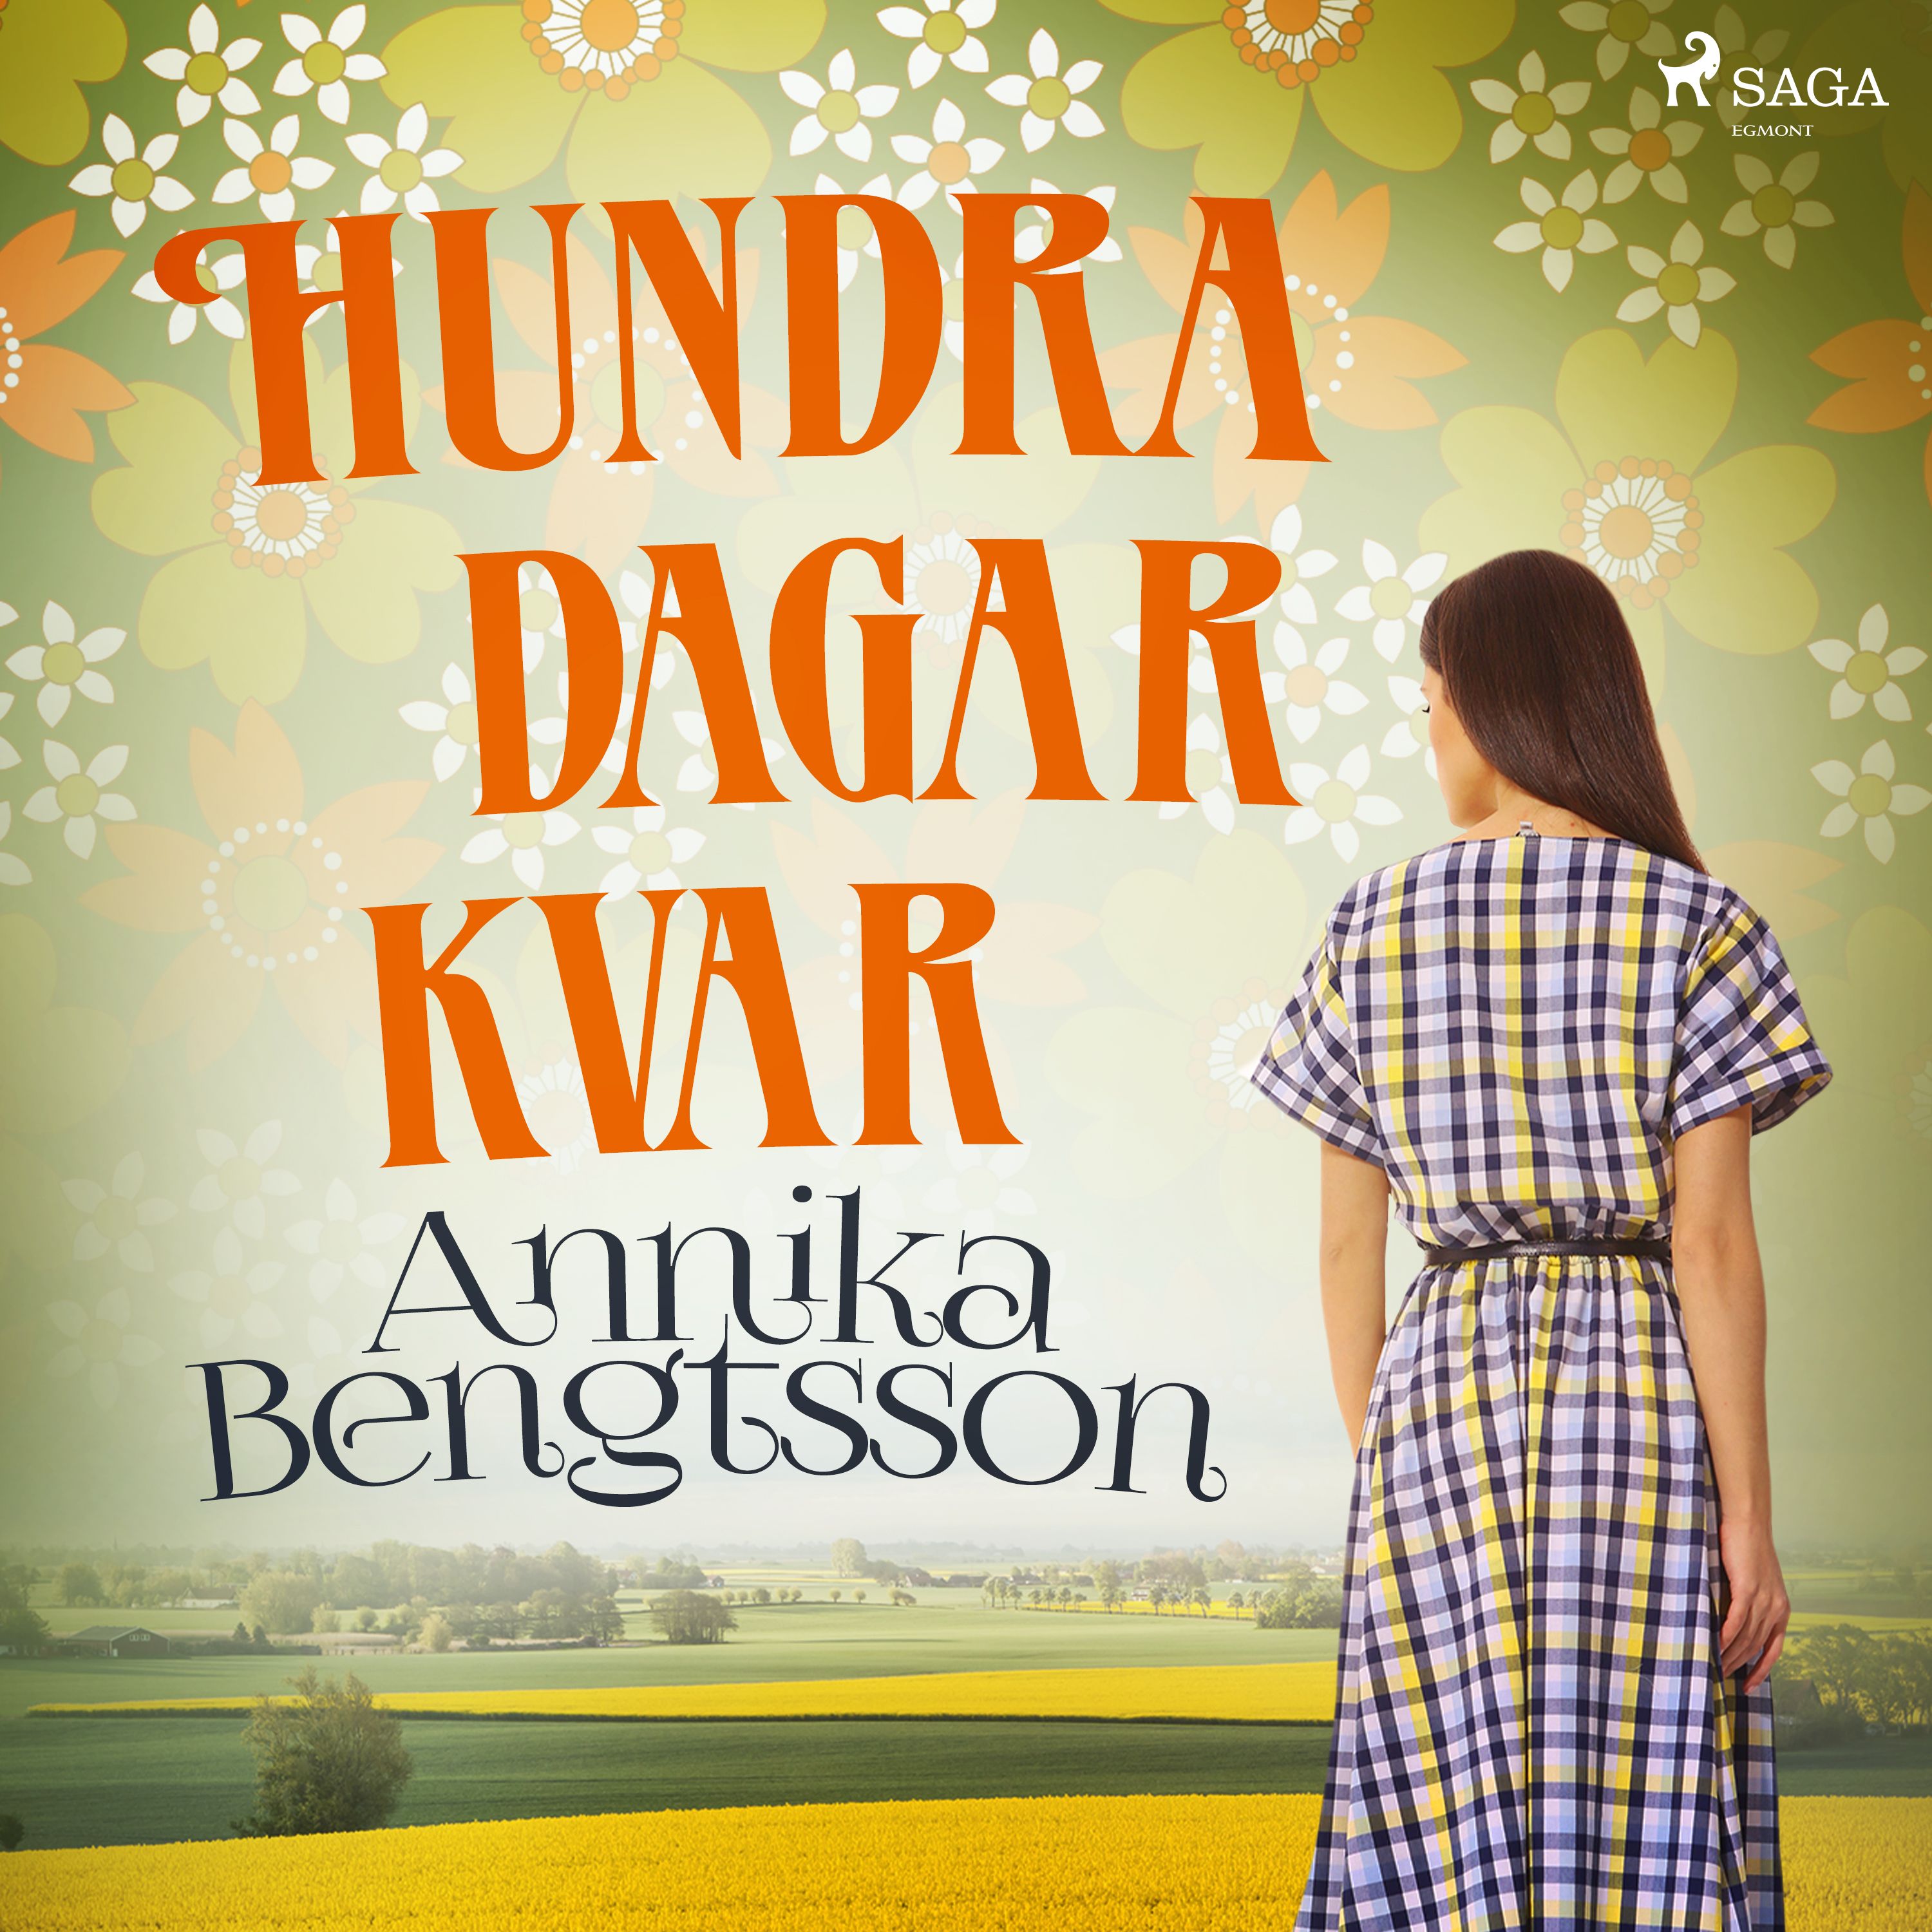 Hundra dagar kvar, ljudbok av Annika Bengtsson